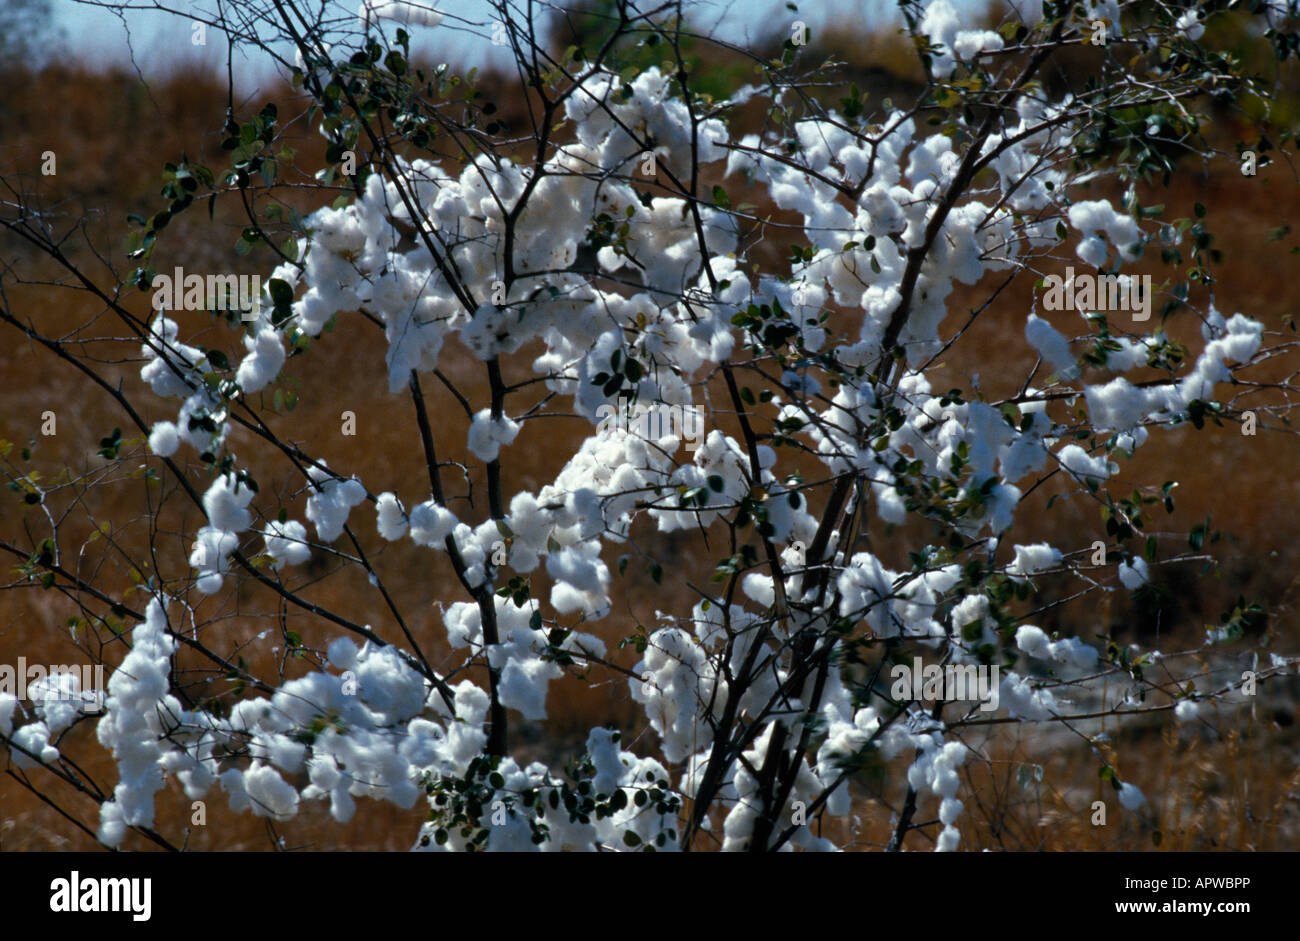 Baumwolle cotone Gossypium herbaceum semi aperto pod cellulosa bush Coton piante addomesticati fibra Faserpflanzen Malvaceae Malven Foto Stock